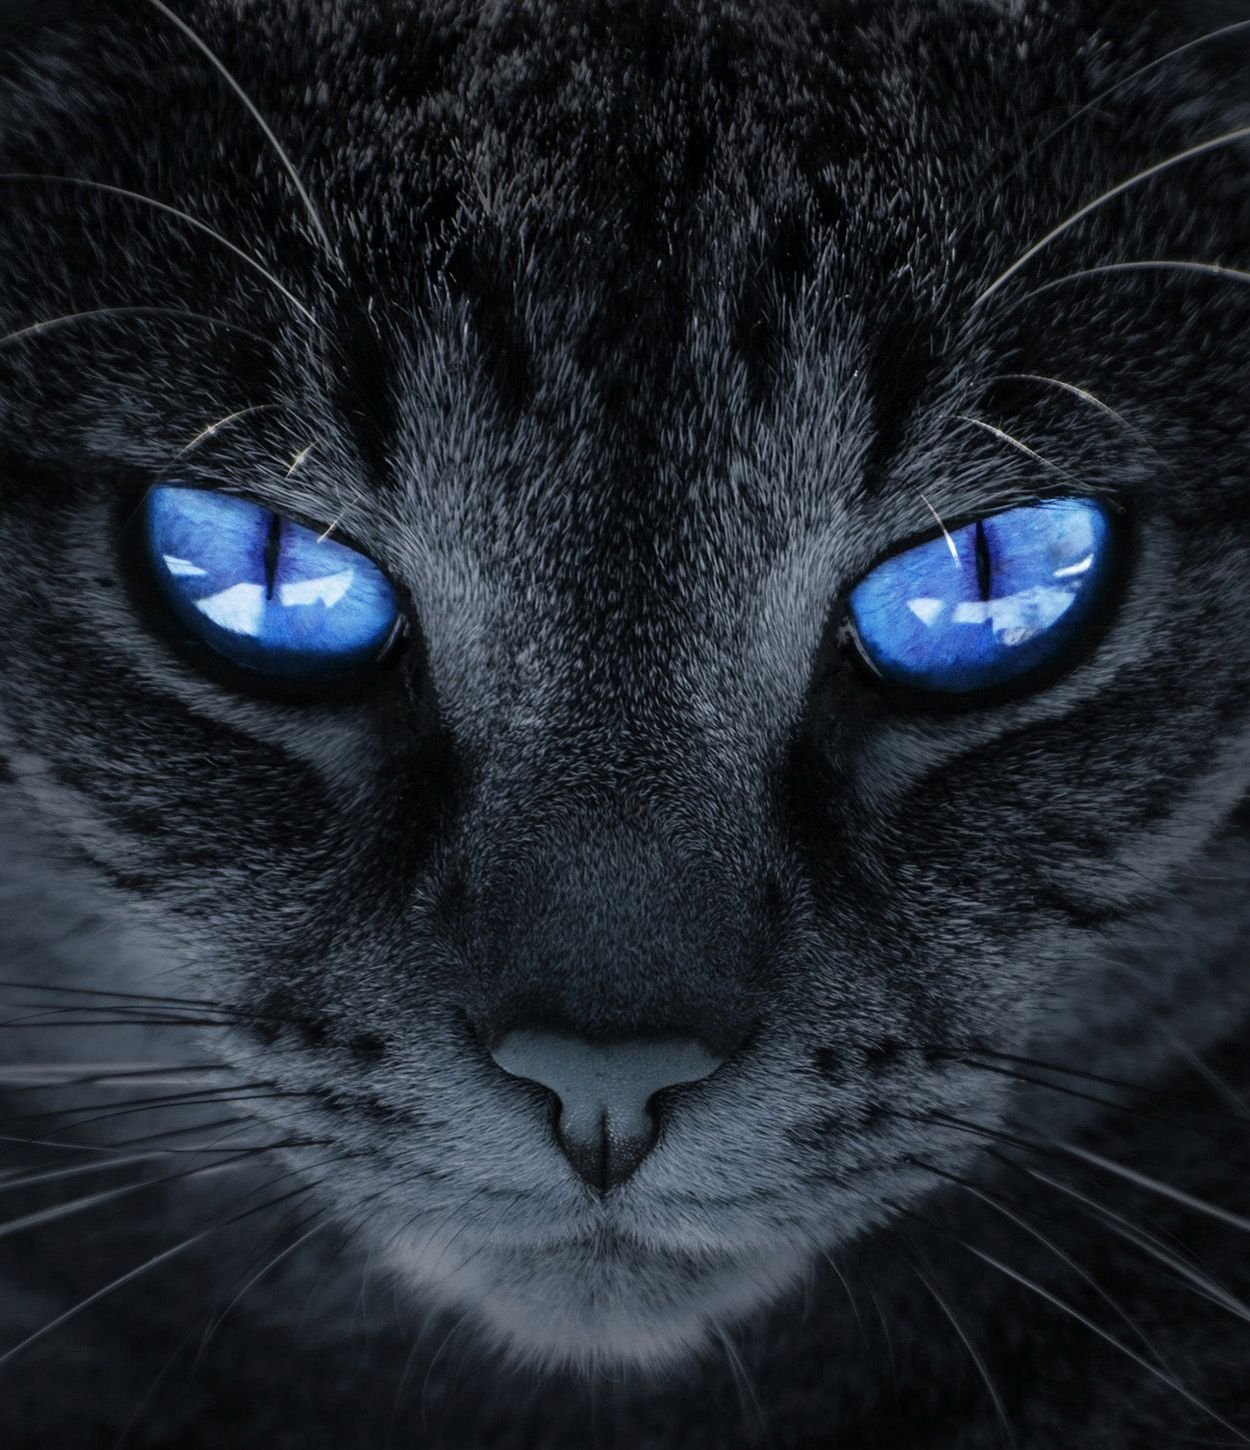 Аватар черный кот. Чёрный кот с синими глазами. Черный кот с голубыми глазами. Коты с синими глазами. Серый кот с голубыми глазами.